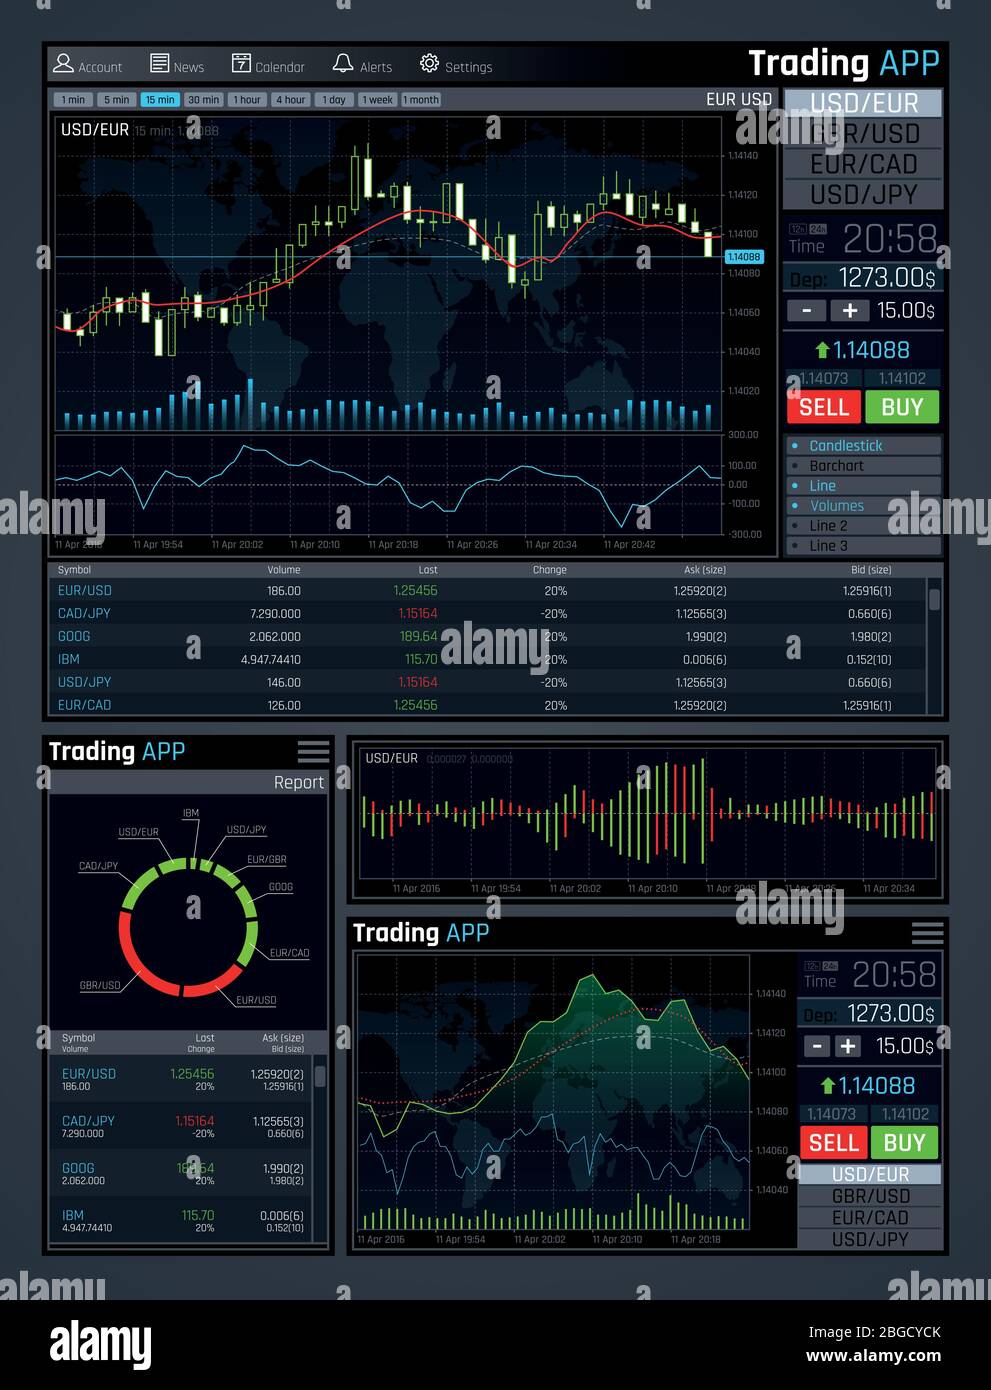 Interfaccia vettoriale per le app di mercato Forex con grafici dei mercati finanziari aziendali e grafici dei dati economici globali. Illustrazione del monitoraggio statistico e di analisi, degli investimenti nel commercio economico Illustrazione Vettoriale